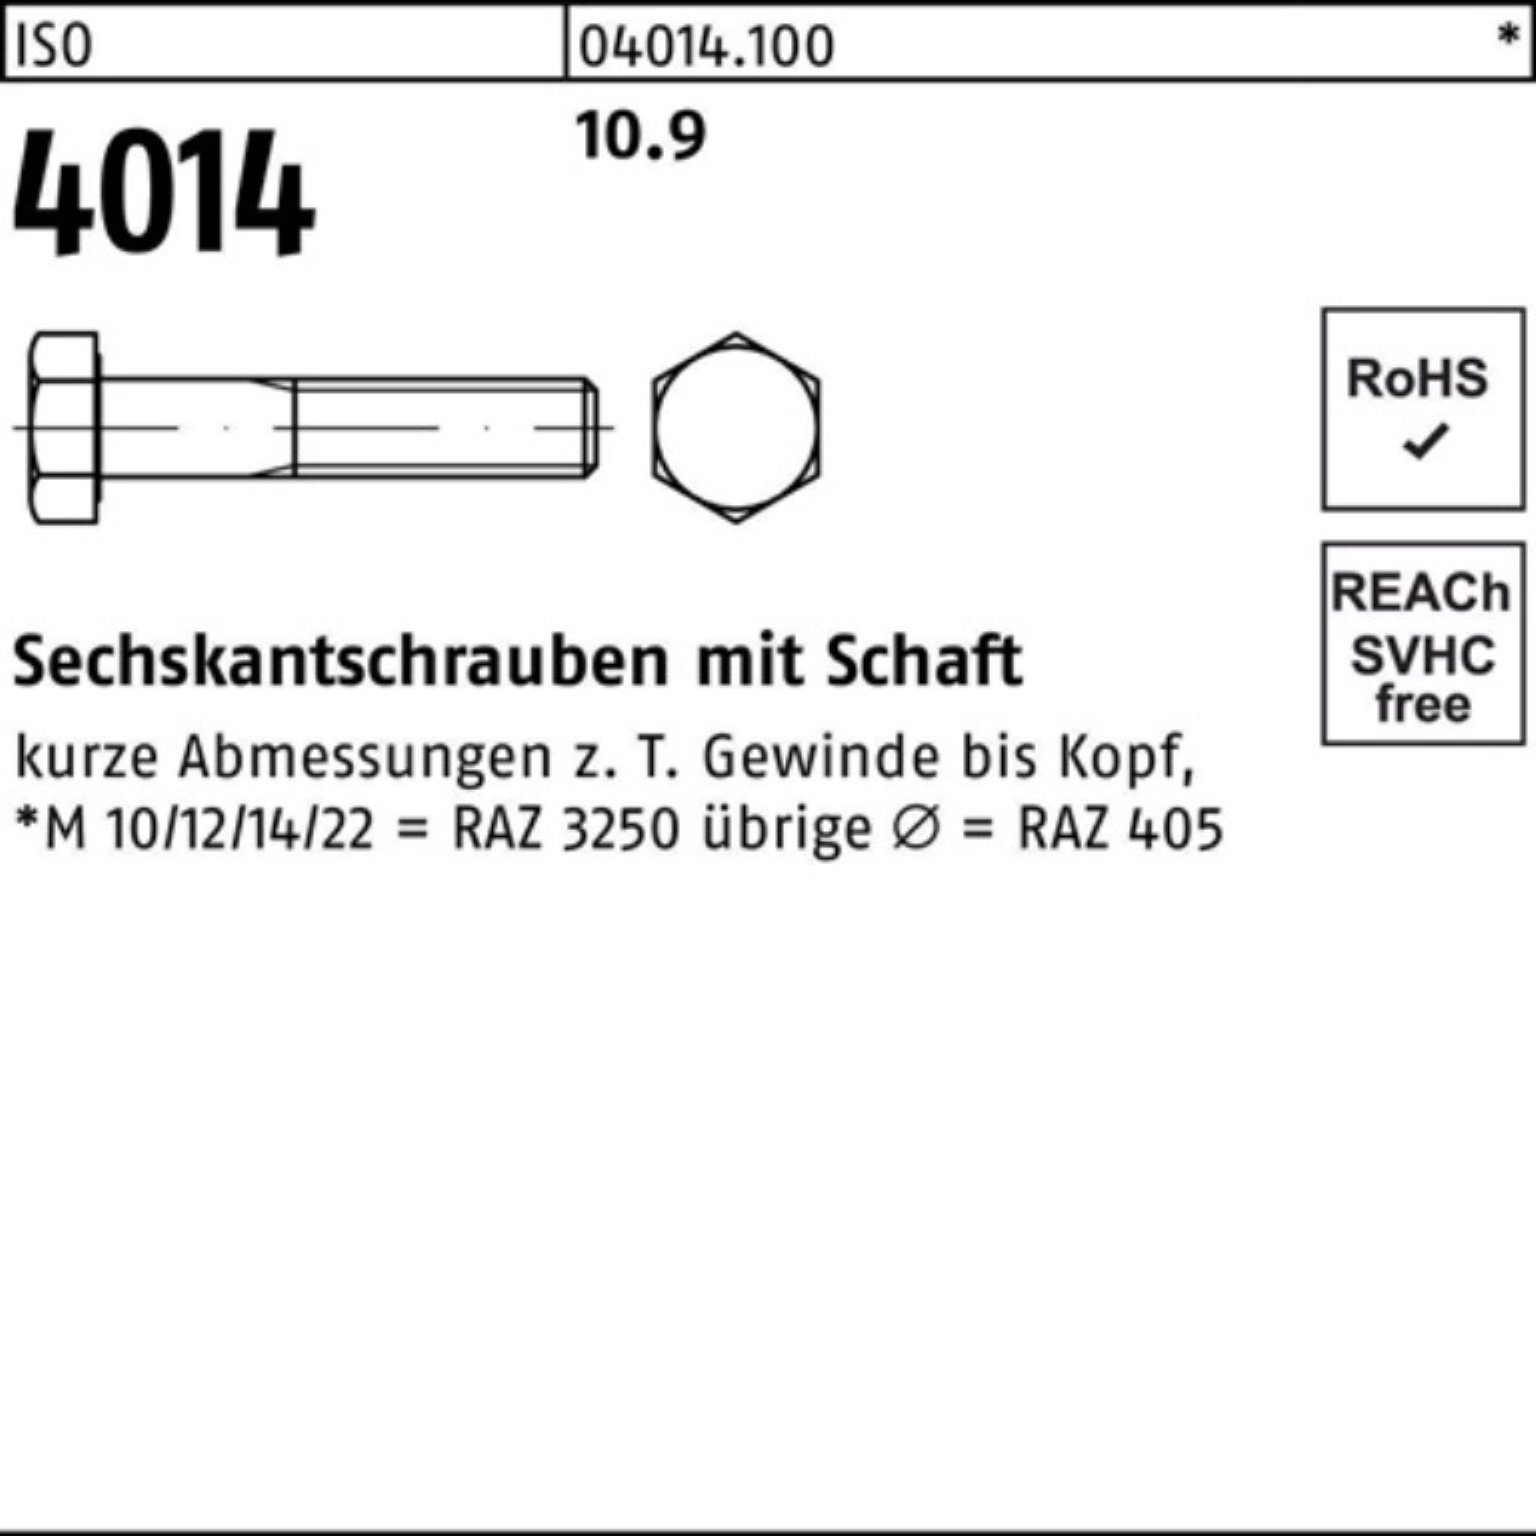 Stück Sechskantschraube Schaft 10.9 1 IS 4014 100er 300 M20x Sechskantschraube Bufab Pack ISO